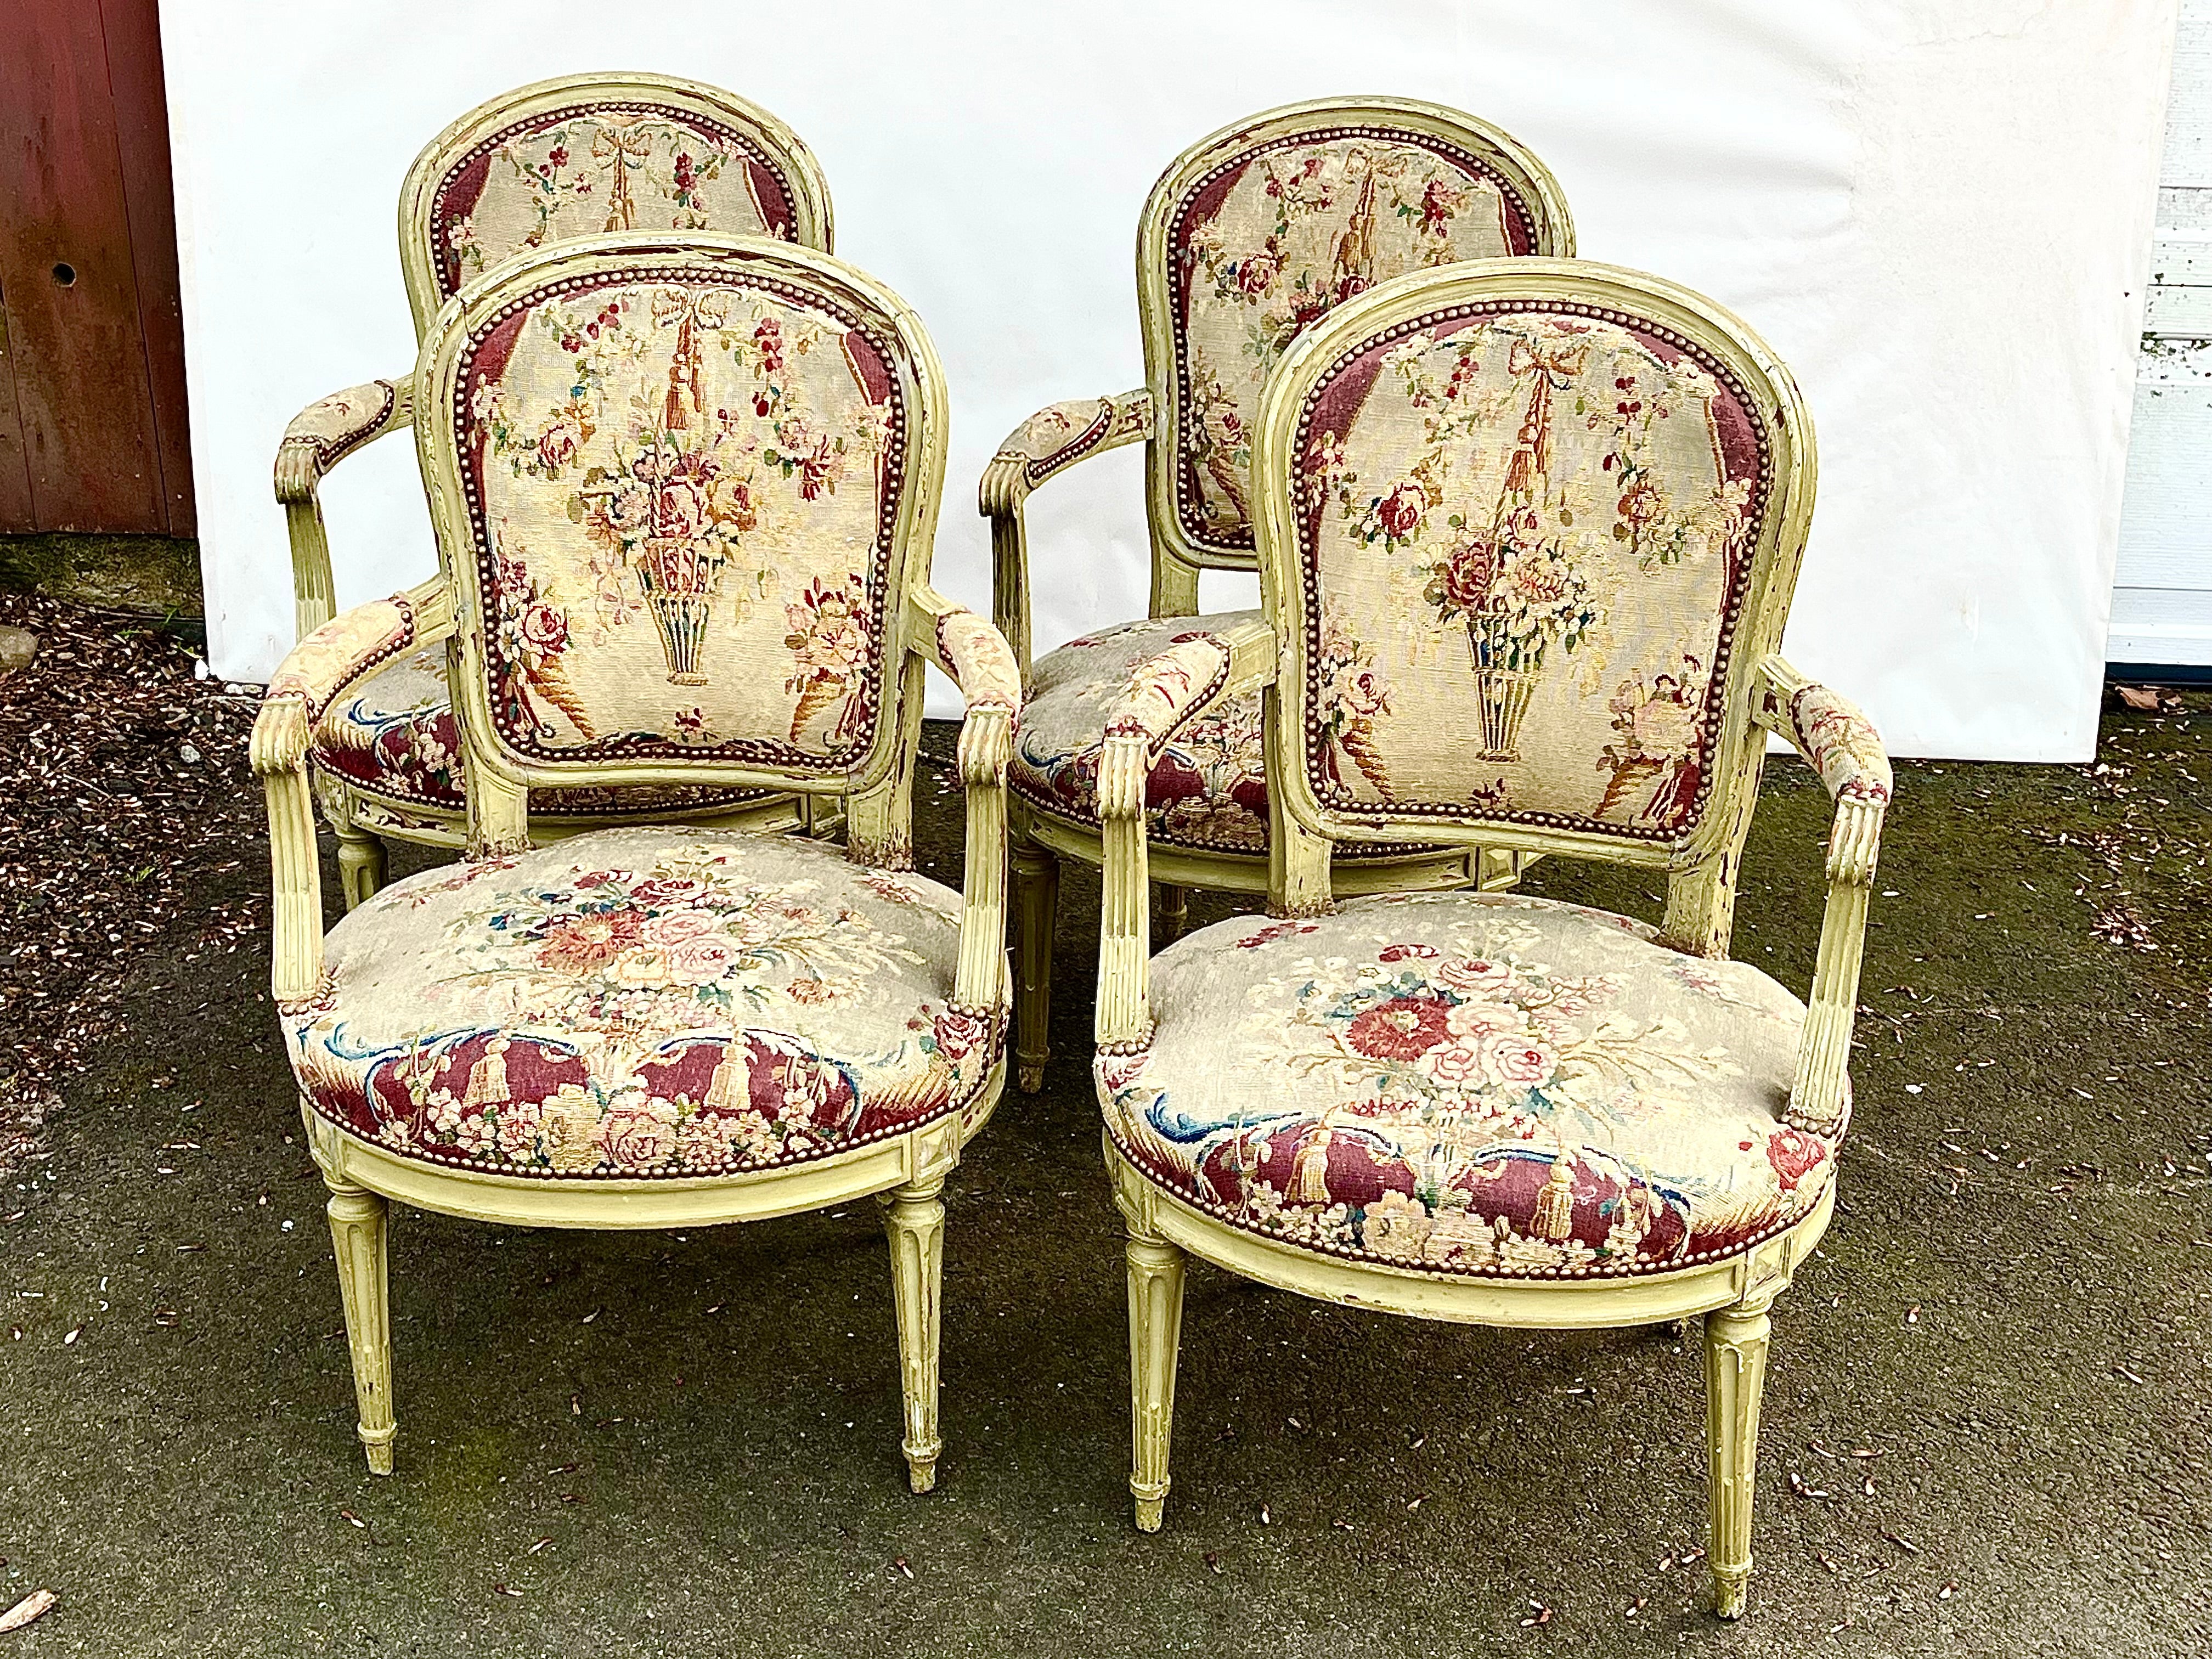 Un ensemble de 4 fauteuils d'époque Louis XVI en finition peinte verte d'origine, avec sièges et dossiers en tapisserie à l'aiguille du 18ème siècle, chaque chaise signée par le fabricant sur le châssis du siège "F. LAPIERRE A LYON".

Peut être